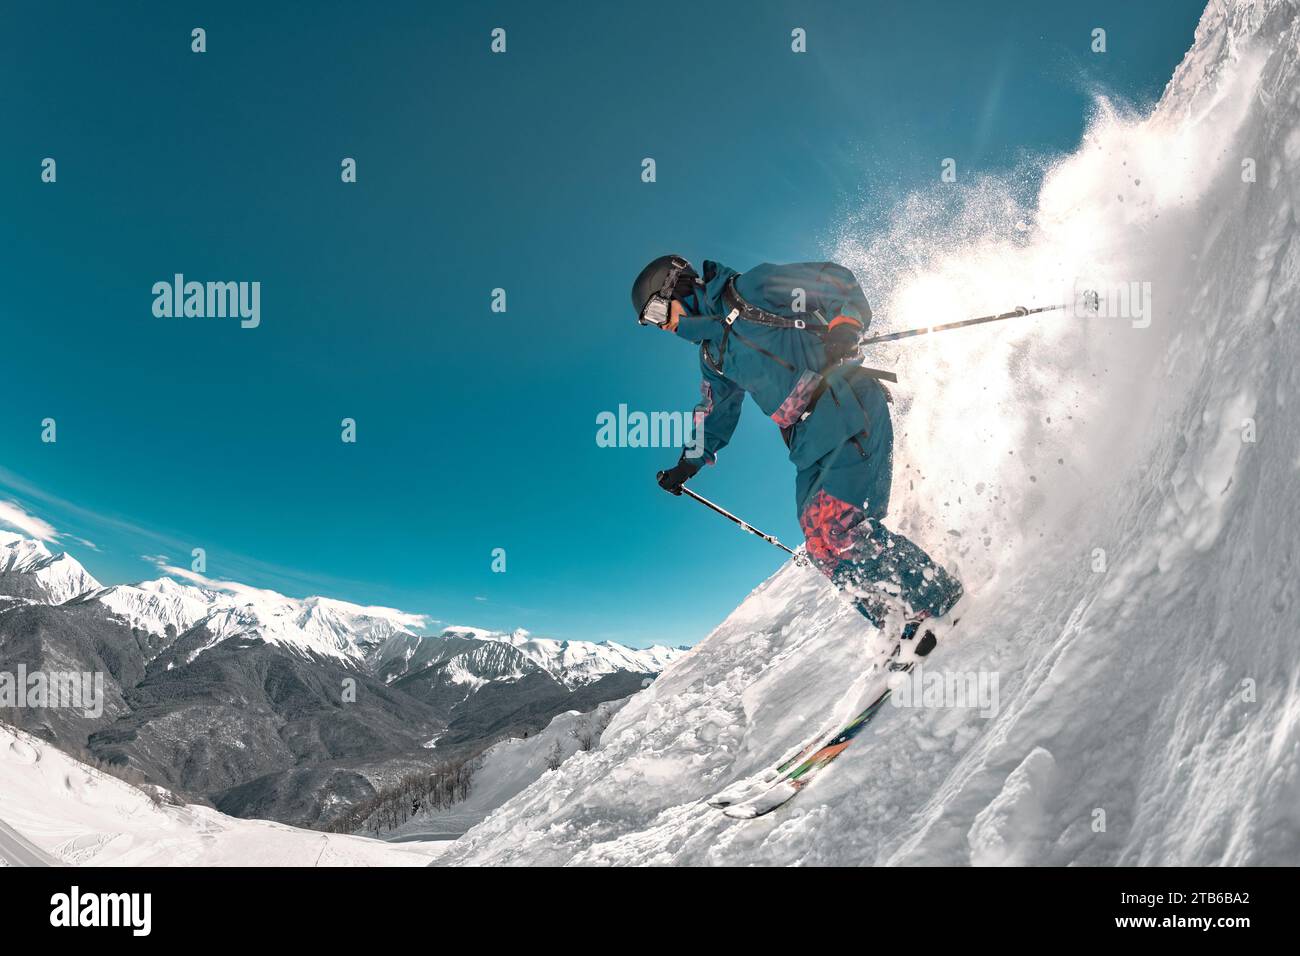 Skieur professionnel freeride saute sur la piste de ski hors-piste. Sports extrêmes à la station de ski Banque D'Images